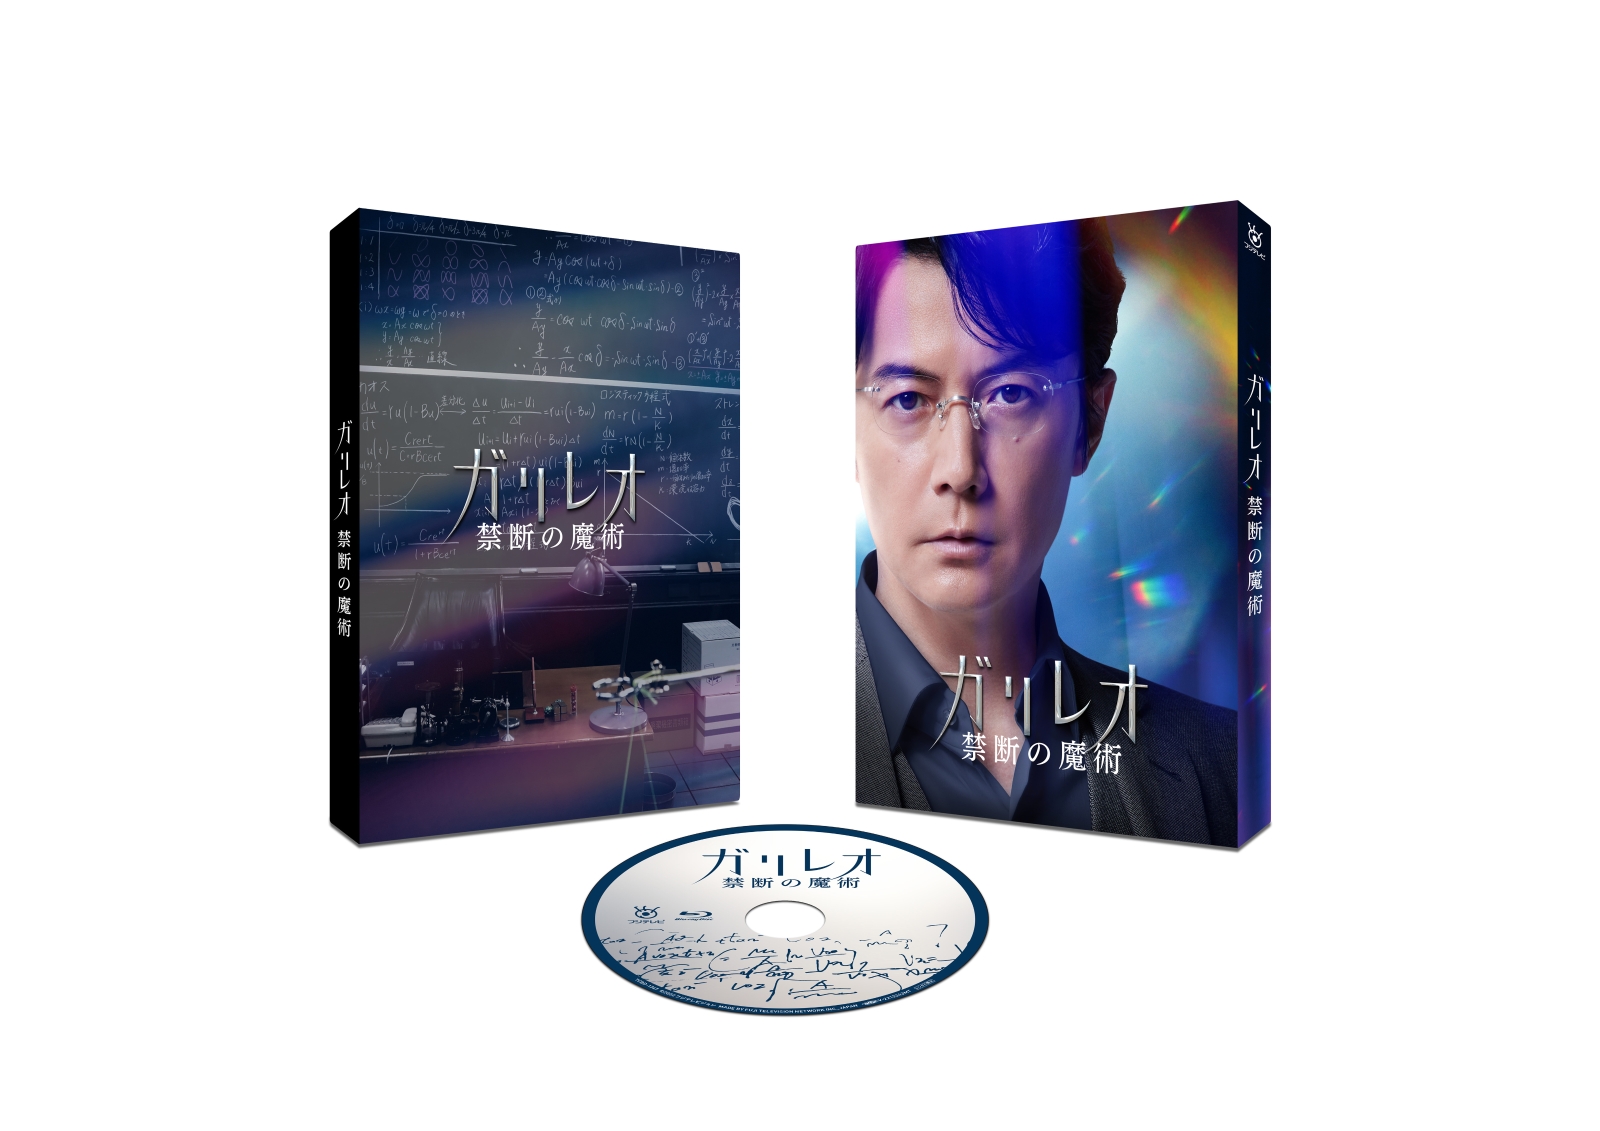 楽天ブックス: ガリレオ 禁断の魔術【Blu-ray】 - 福山雅治